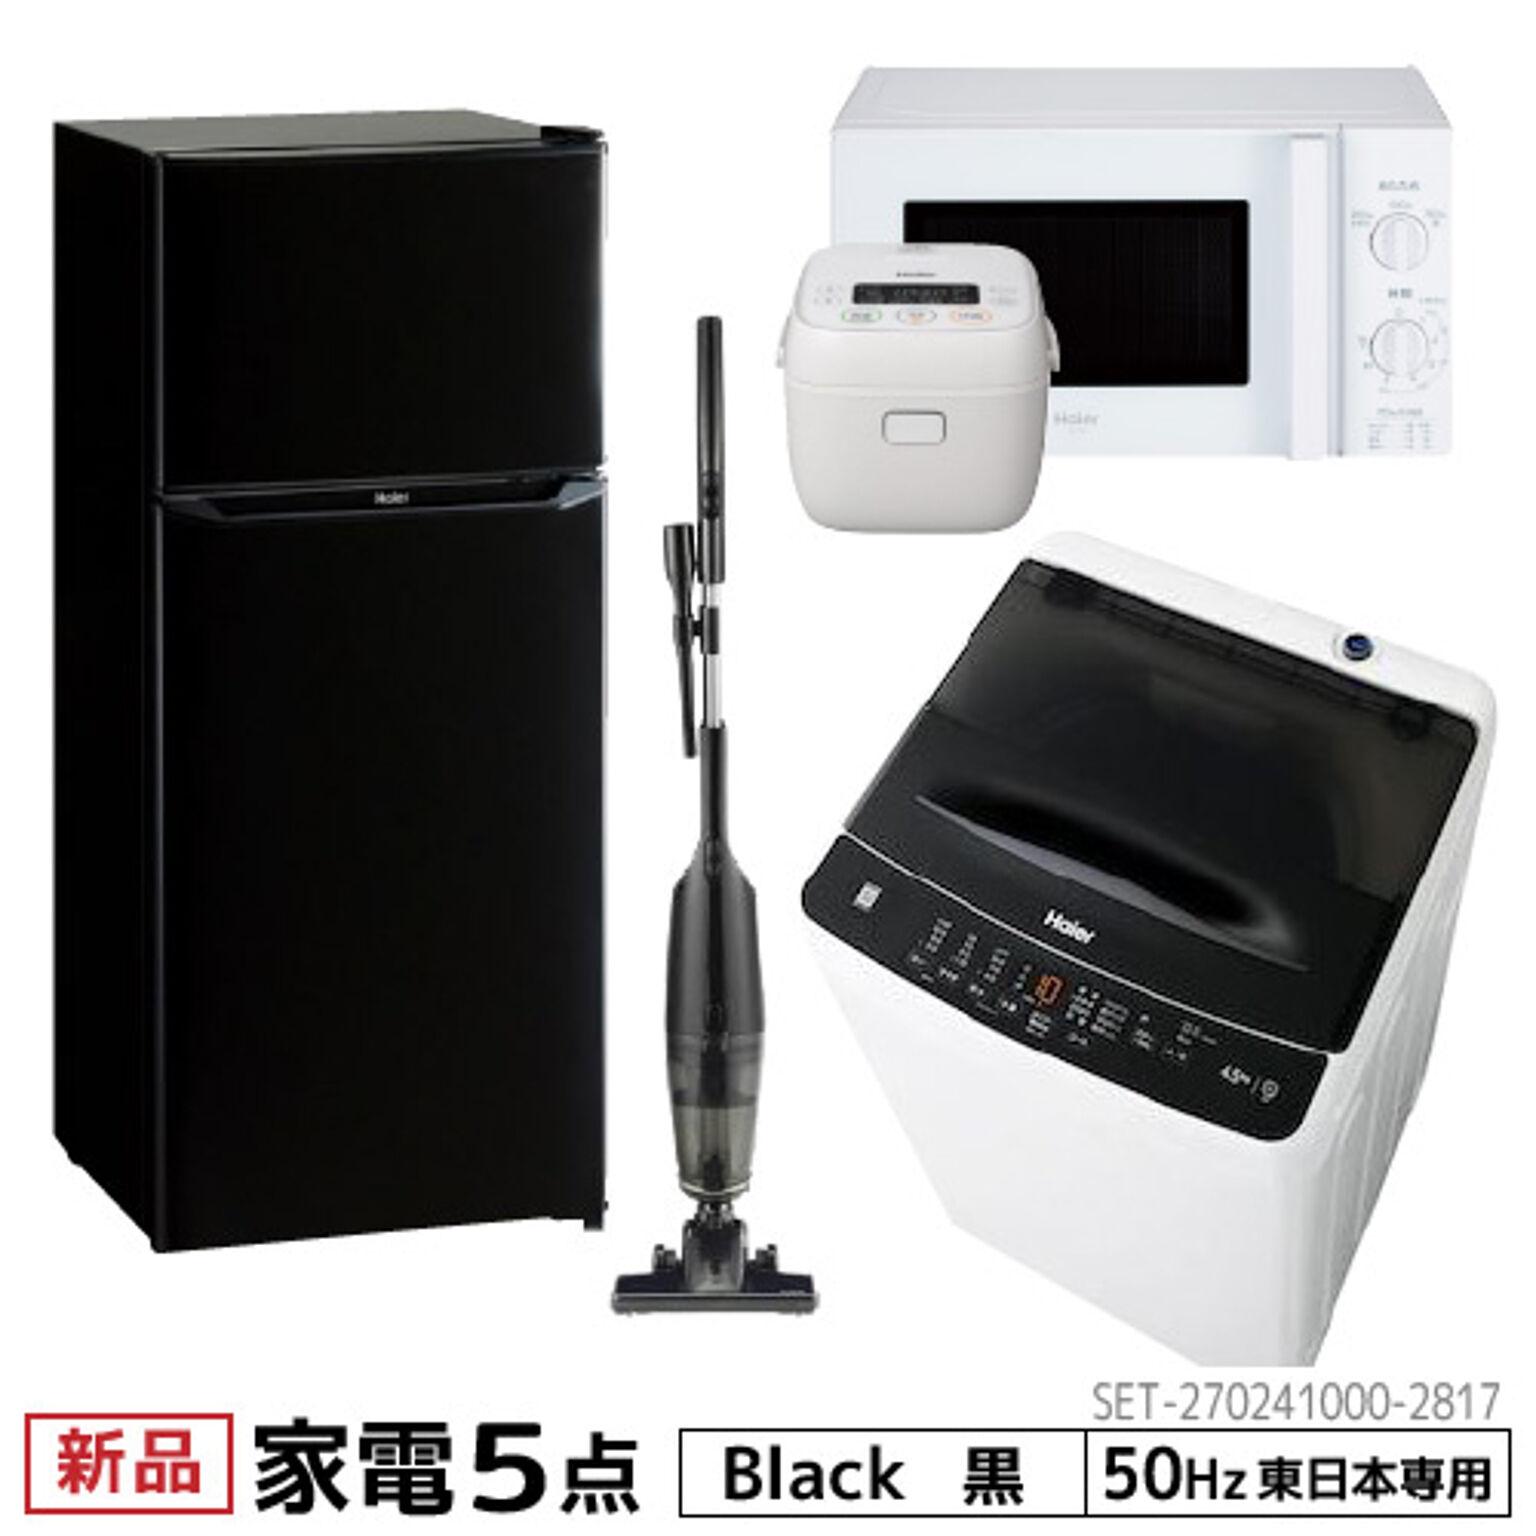 一人暮らし 家電セット5点セット 東日本地域専用 ハイアール 2ドア冷蔵庫 ブラック色 130L 全自動洗濯機 洗濯4.5kg 電子レンジ ホワイト 17L50Hz 炊飯器 3合 クリーナー